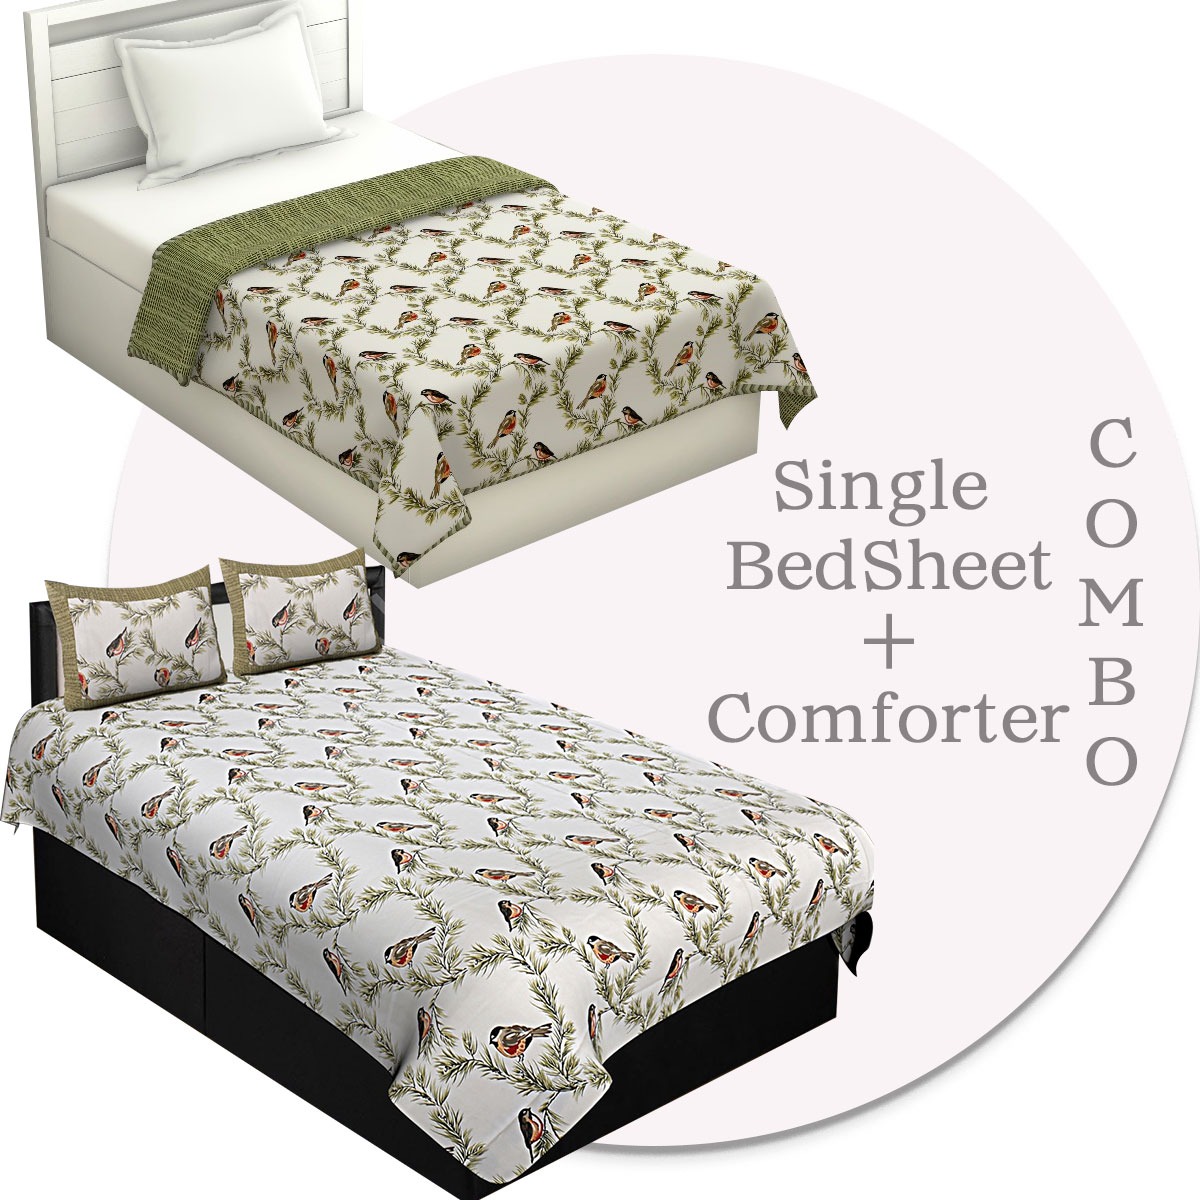 Combo153 Single Bedsheet + Comforter